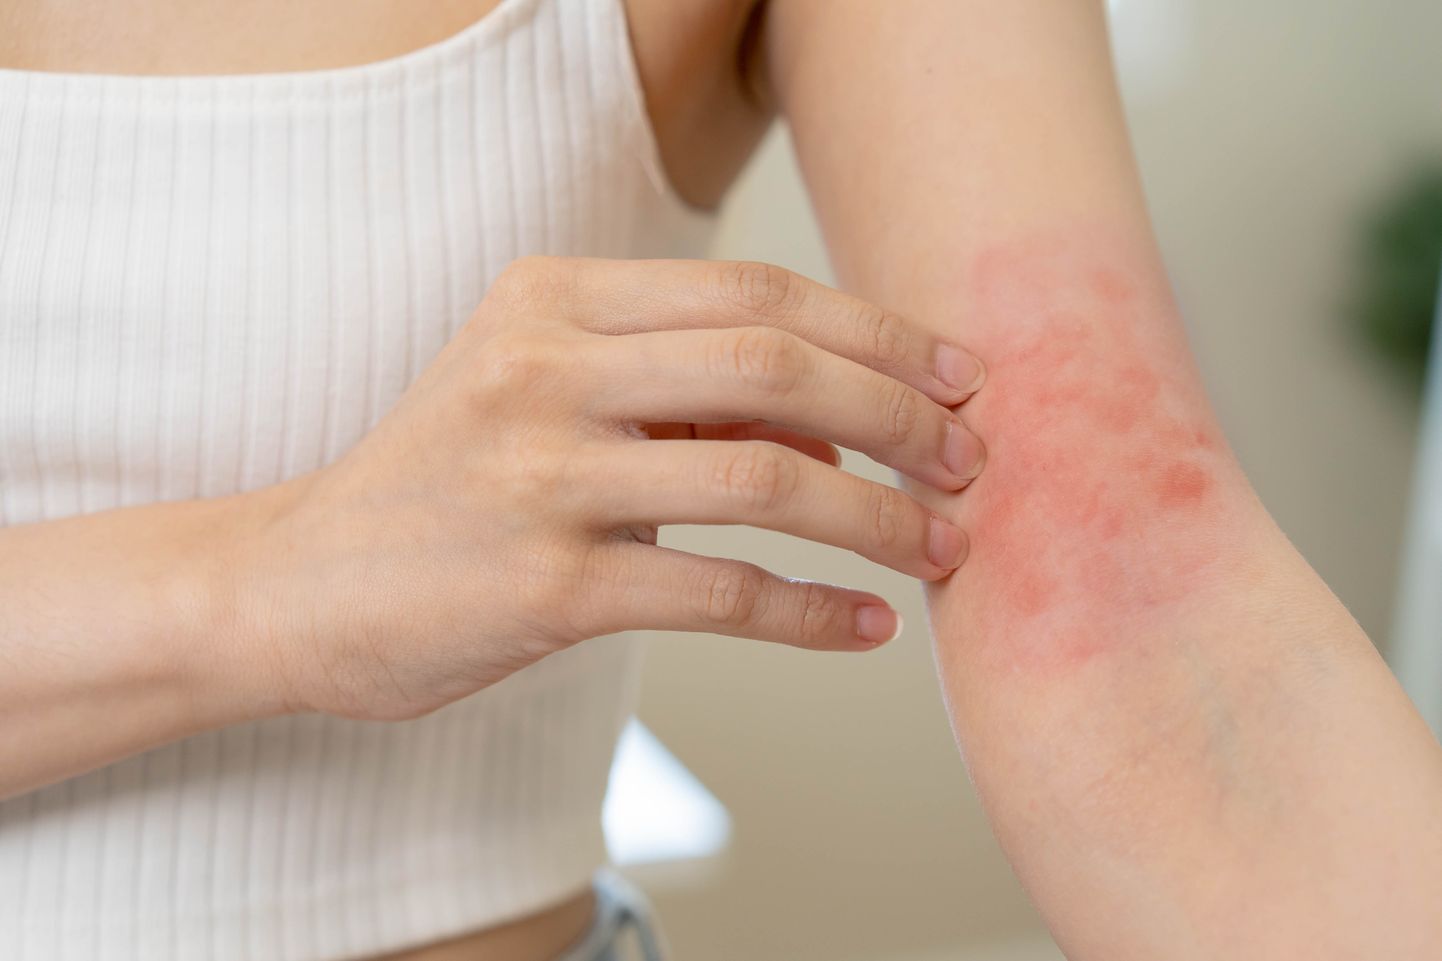 Atoopiline dermatiit esineb tihti käsivarre siseküljel või põlveõndlates.